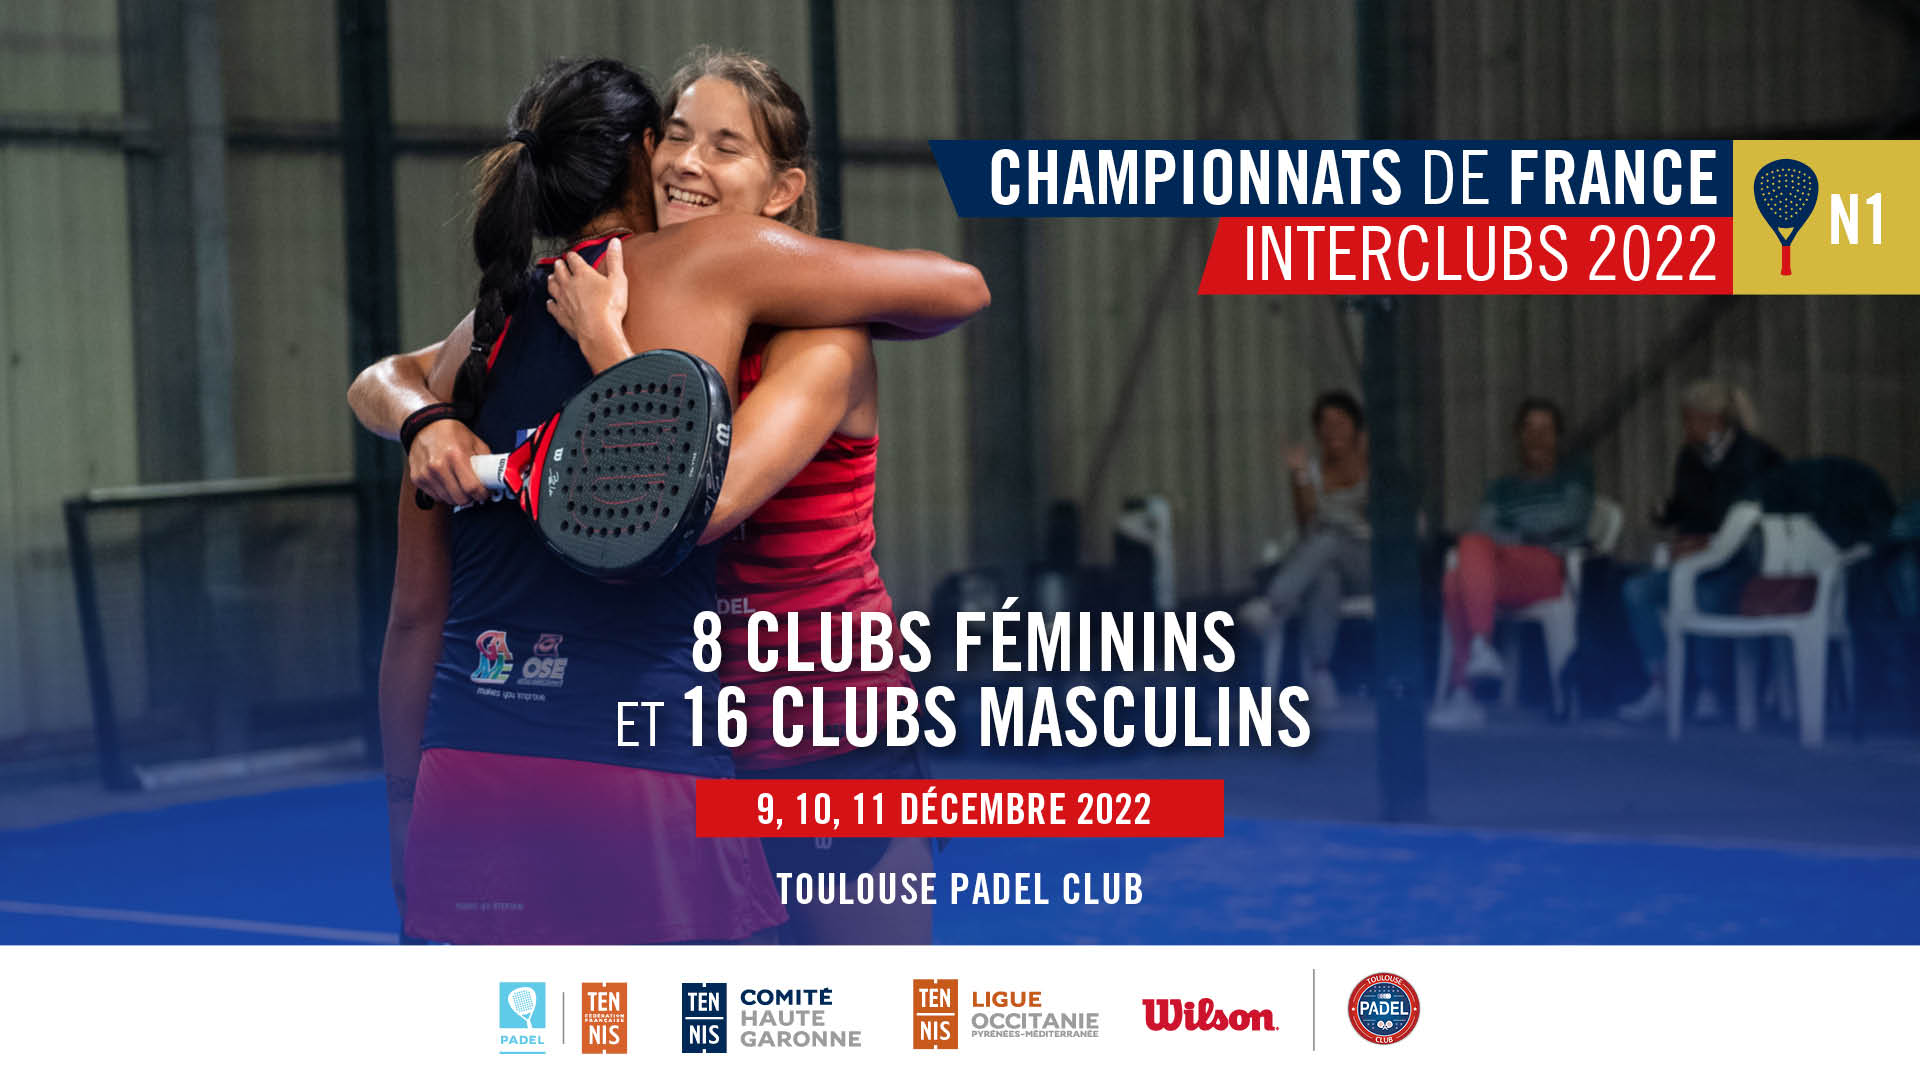 Franska Interclub N1 Championships: resultat, program och live